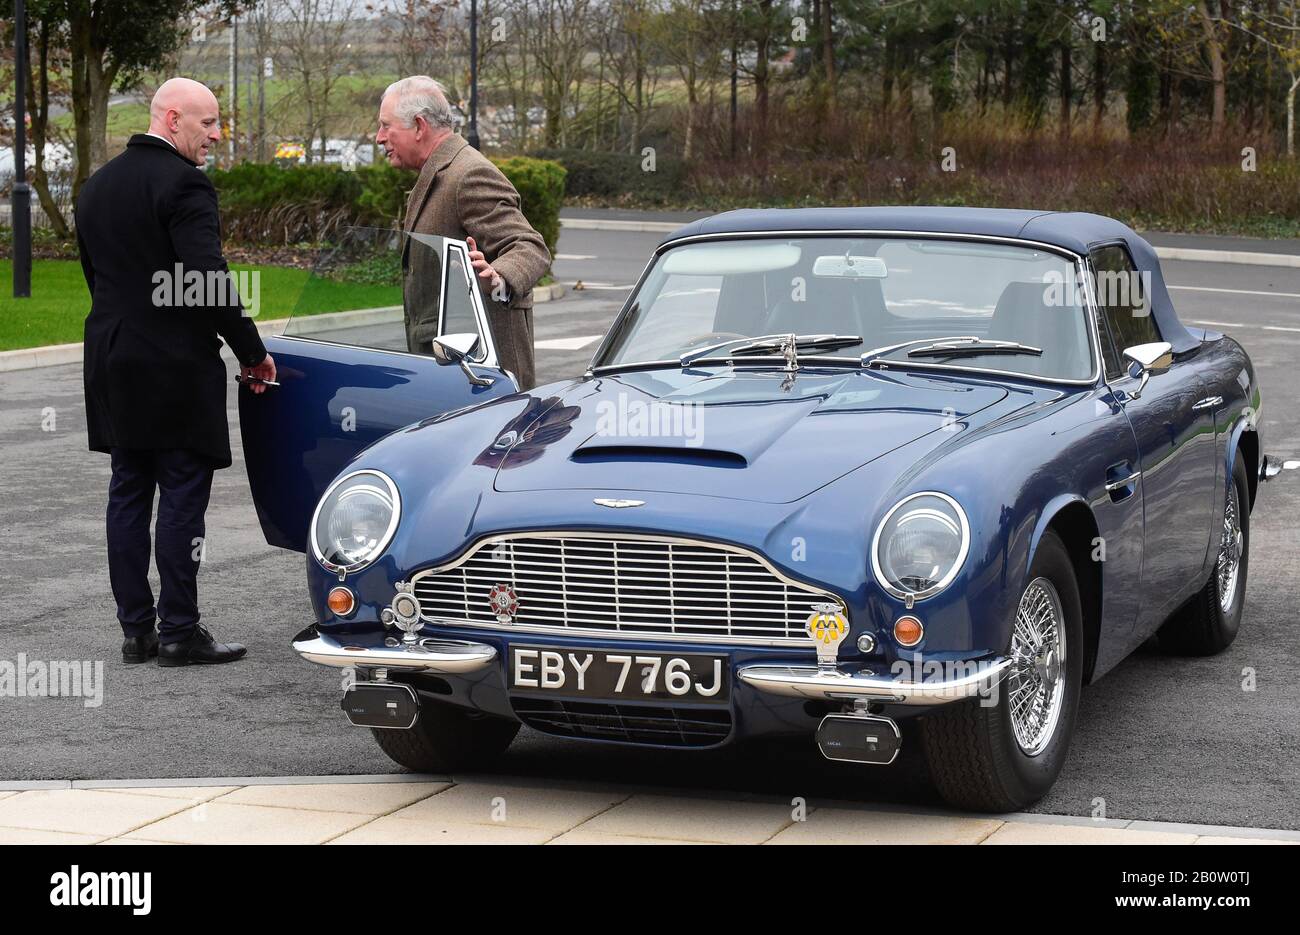 Il Principe di Galles con la sua Aston Martin DB6 mentre arriva per una visita alla fabbrica Aston Martin Lagonda a St. Athan a Barry, Galles. Foto PA. Data Immagine: Venerdì 21 Febbraio 2020. Vedi la storia di PA ROYAL Charles. Il credito fotografico dovrebbe essere: Rebecca Naden/PA Wire Foto Stock